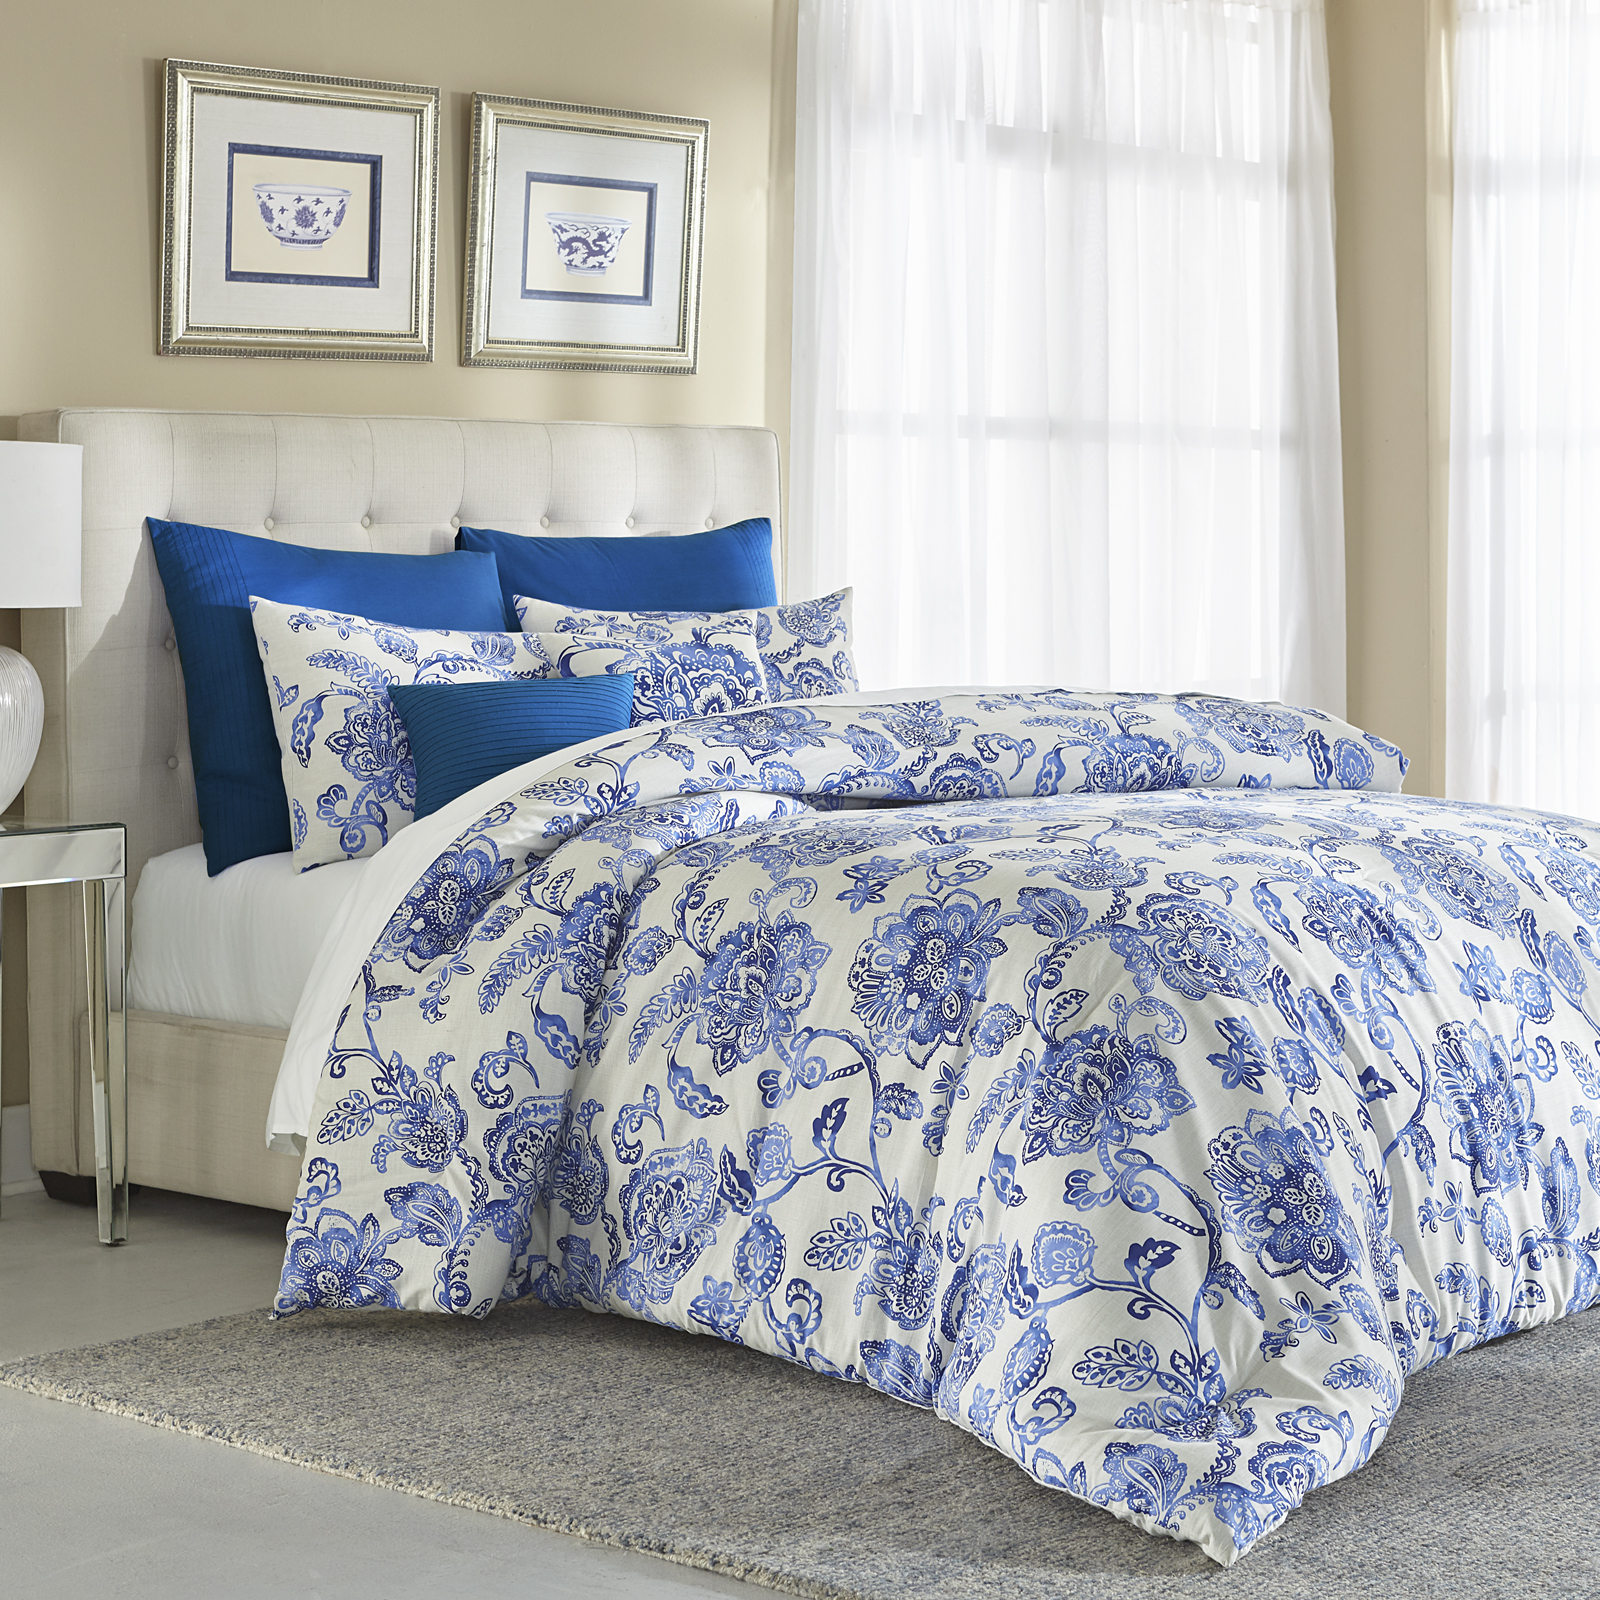 Cannon 7 Piece Comforter Set &#8211; Floral Blue